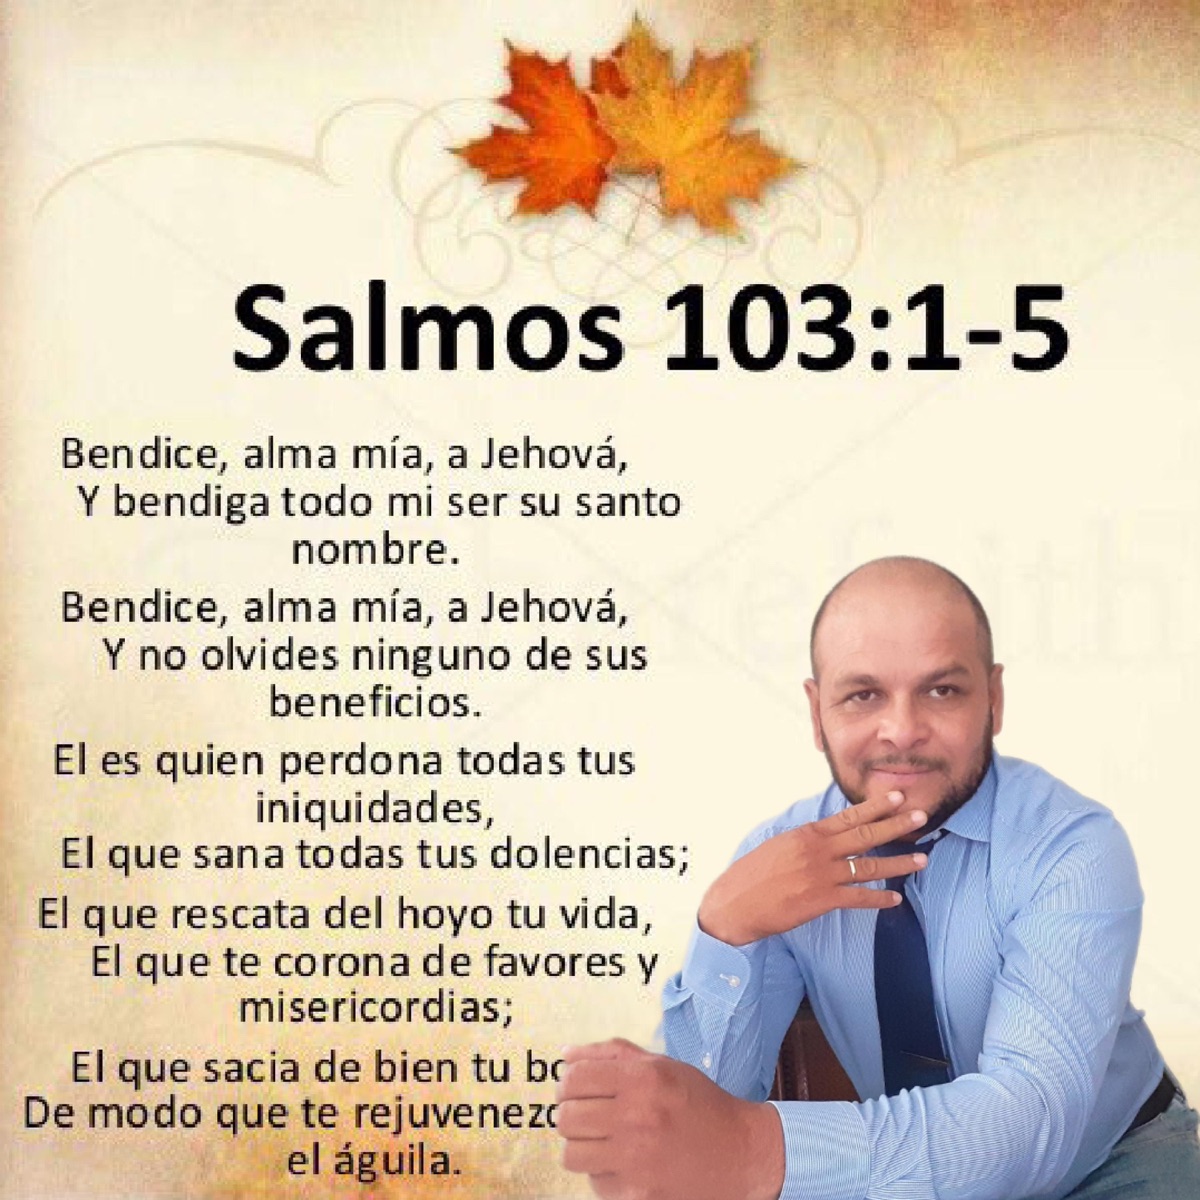 5 Beneficios del Salmos 103 